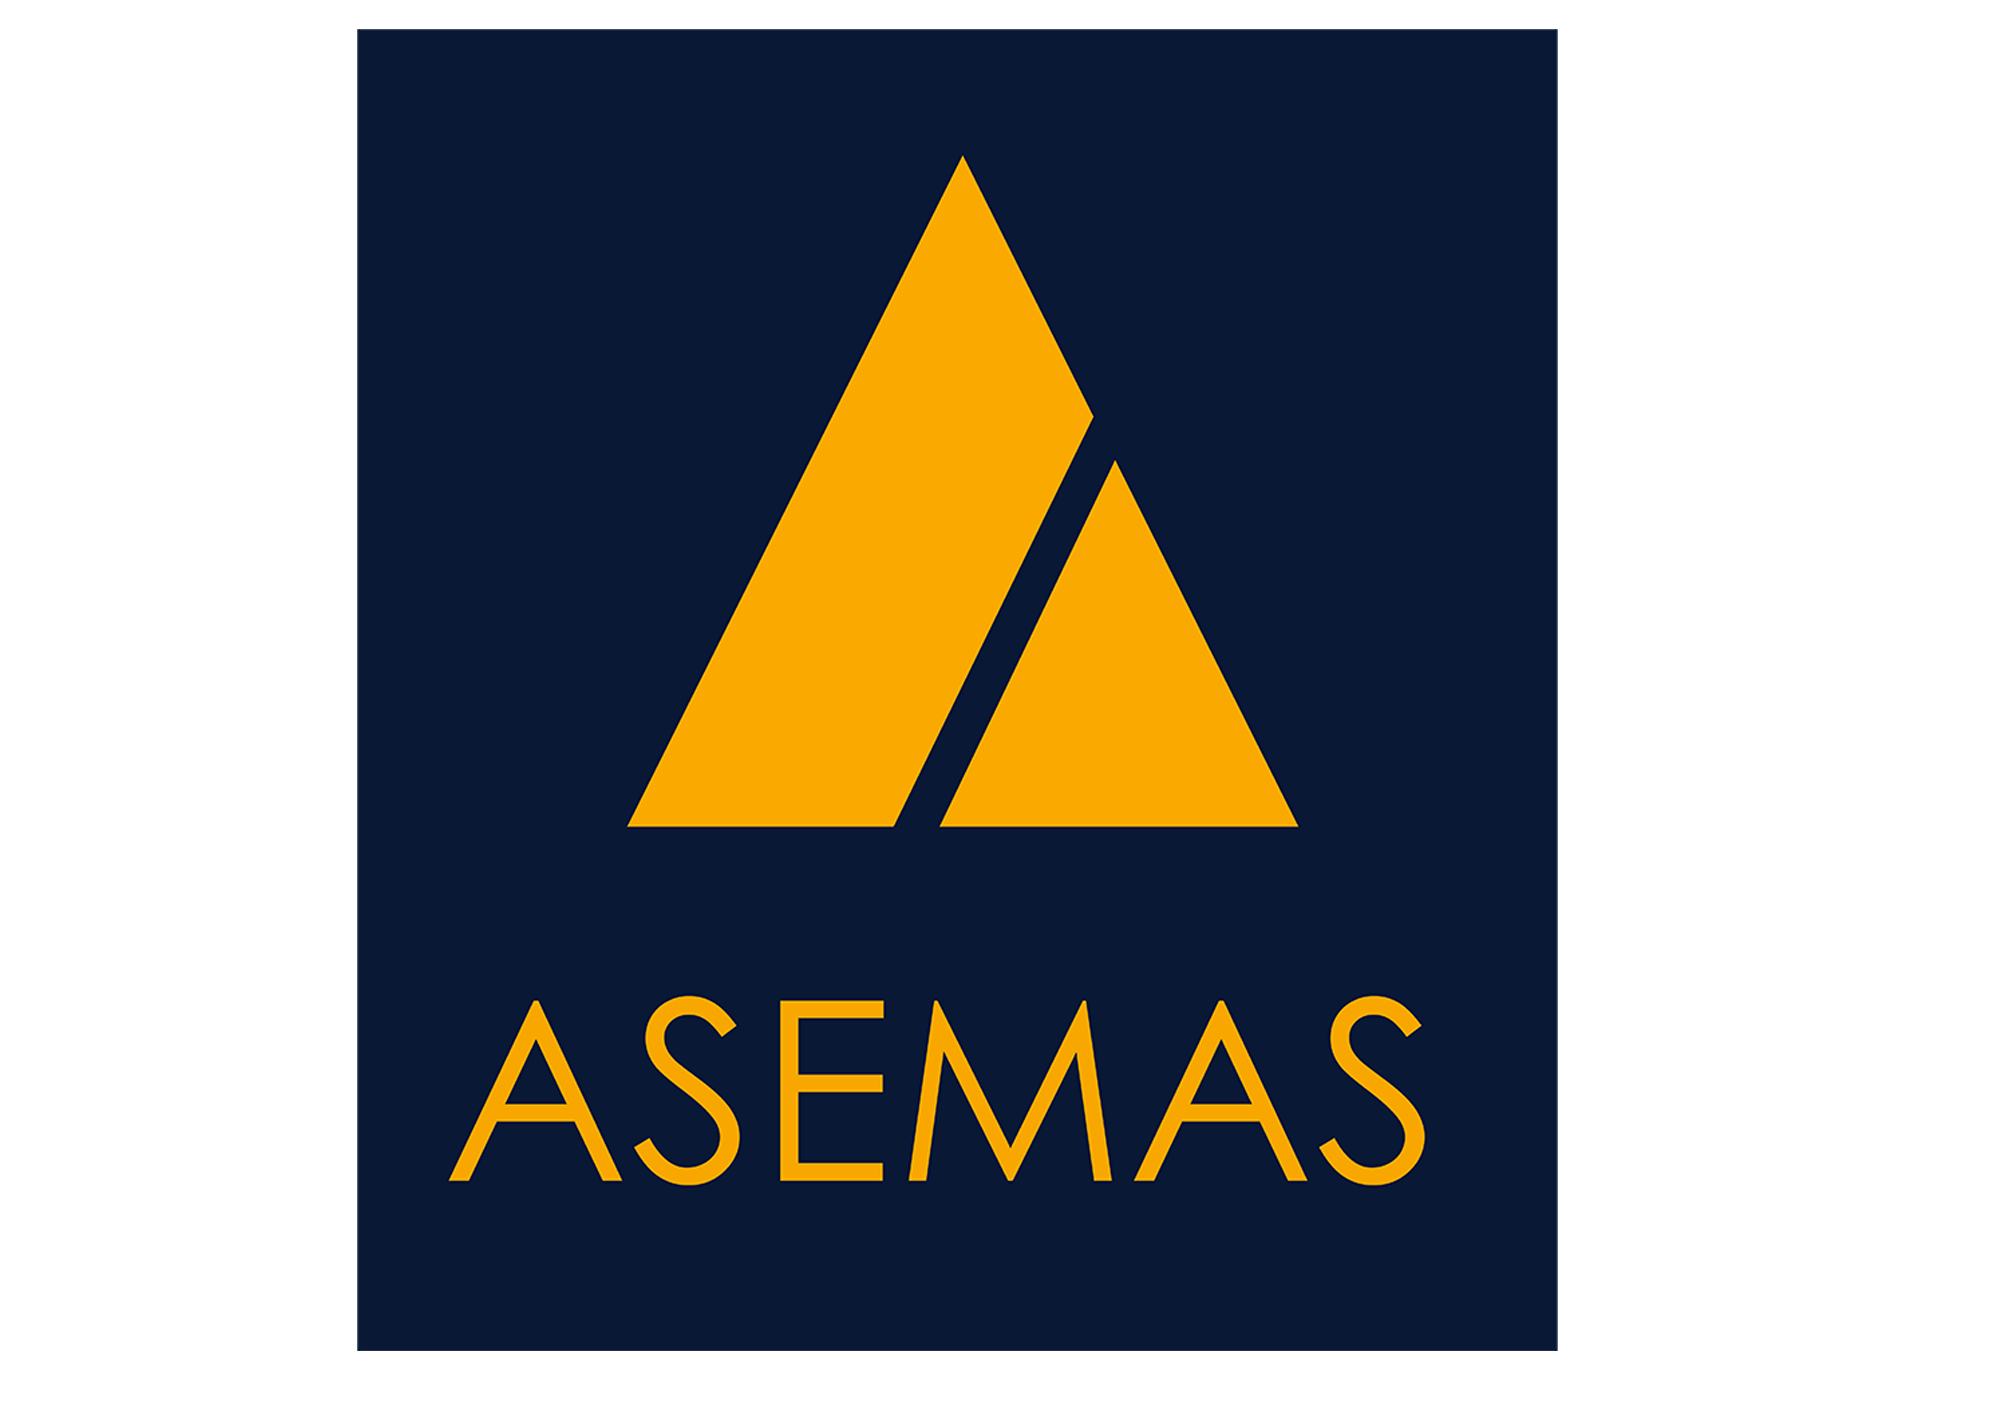 ASEMAS logos2